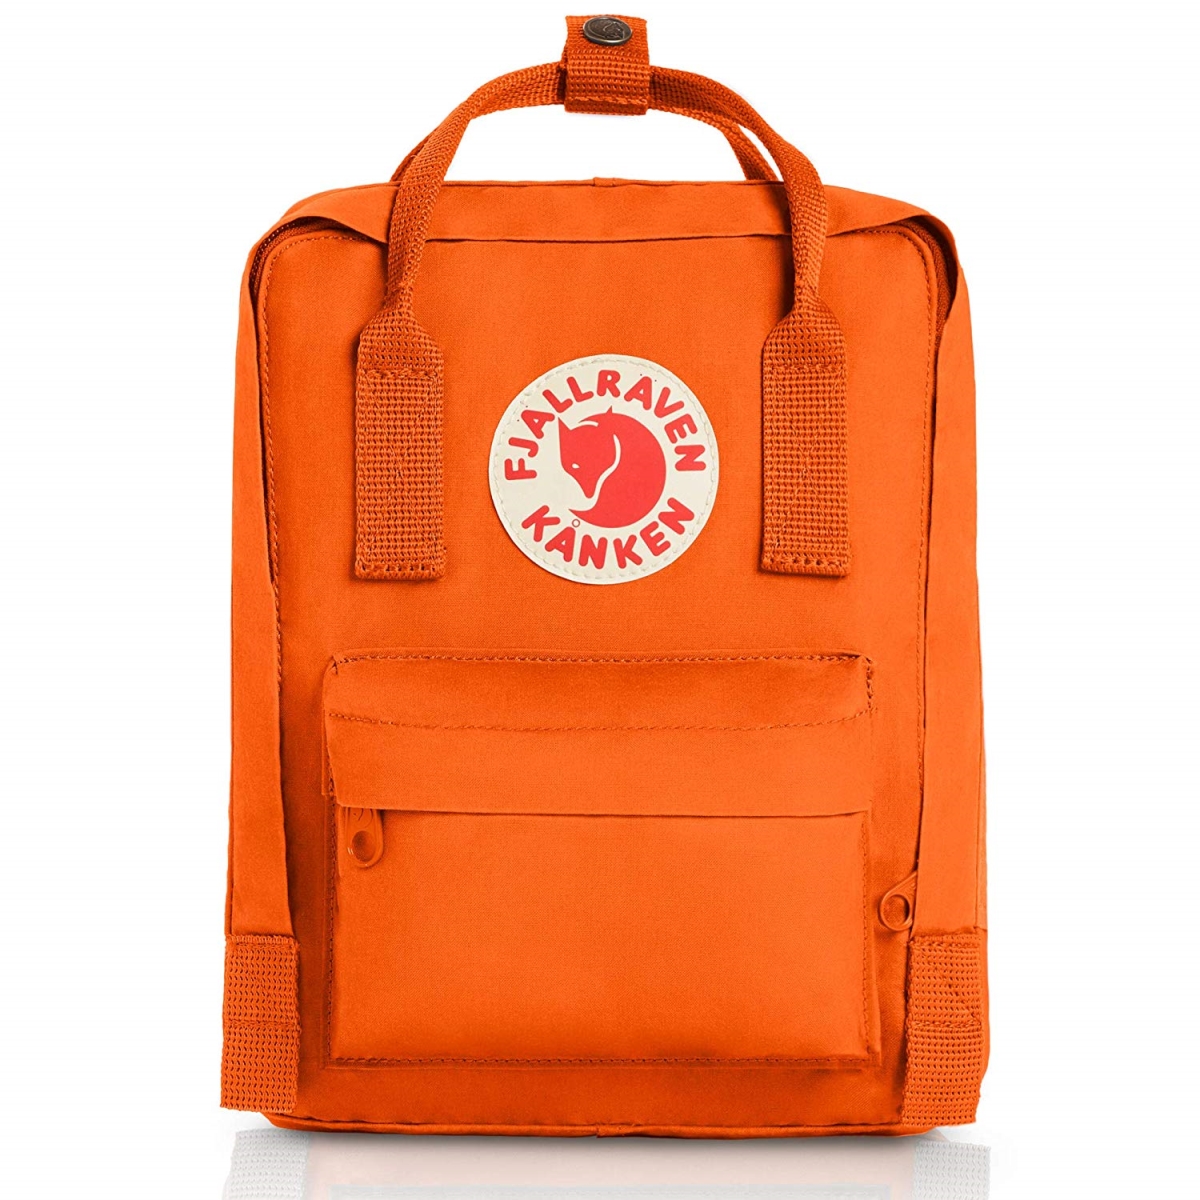 23561-212 Kanken Mini Classic Backpack For Everyday - Burnt Orange